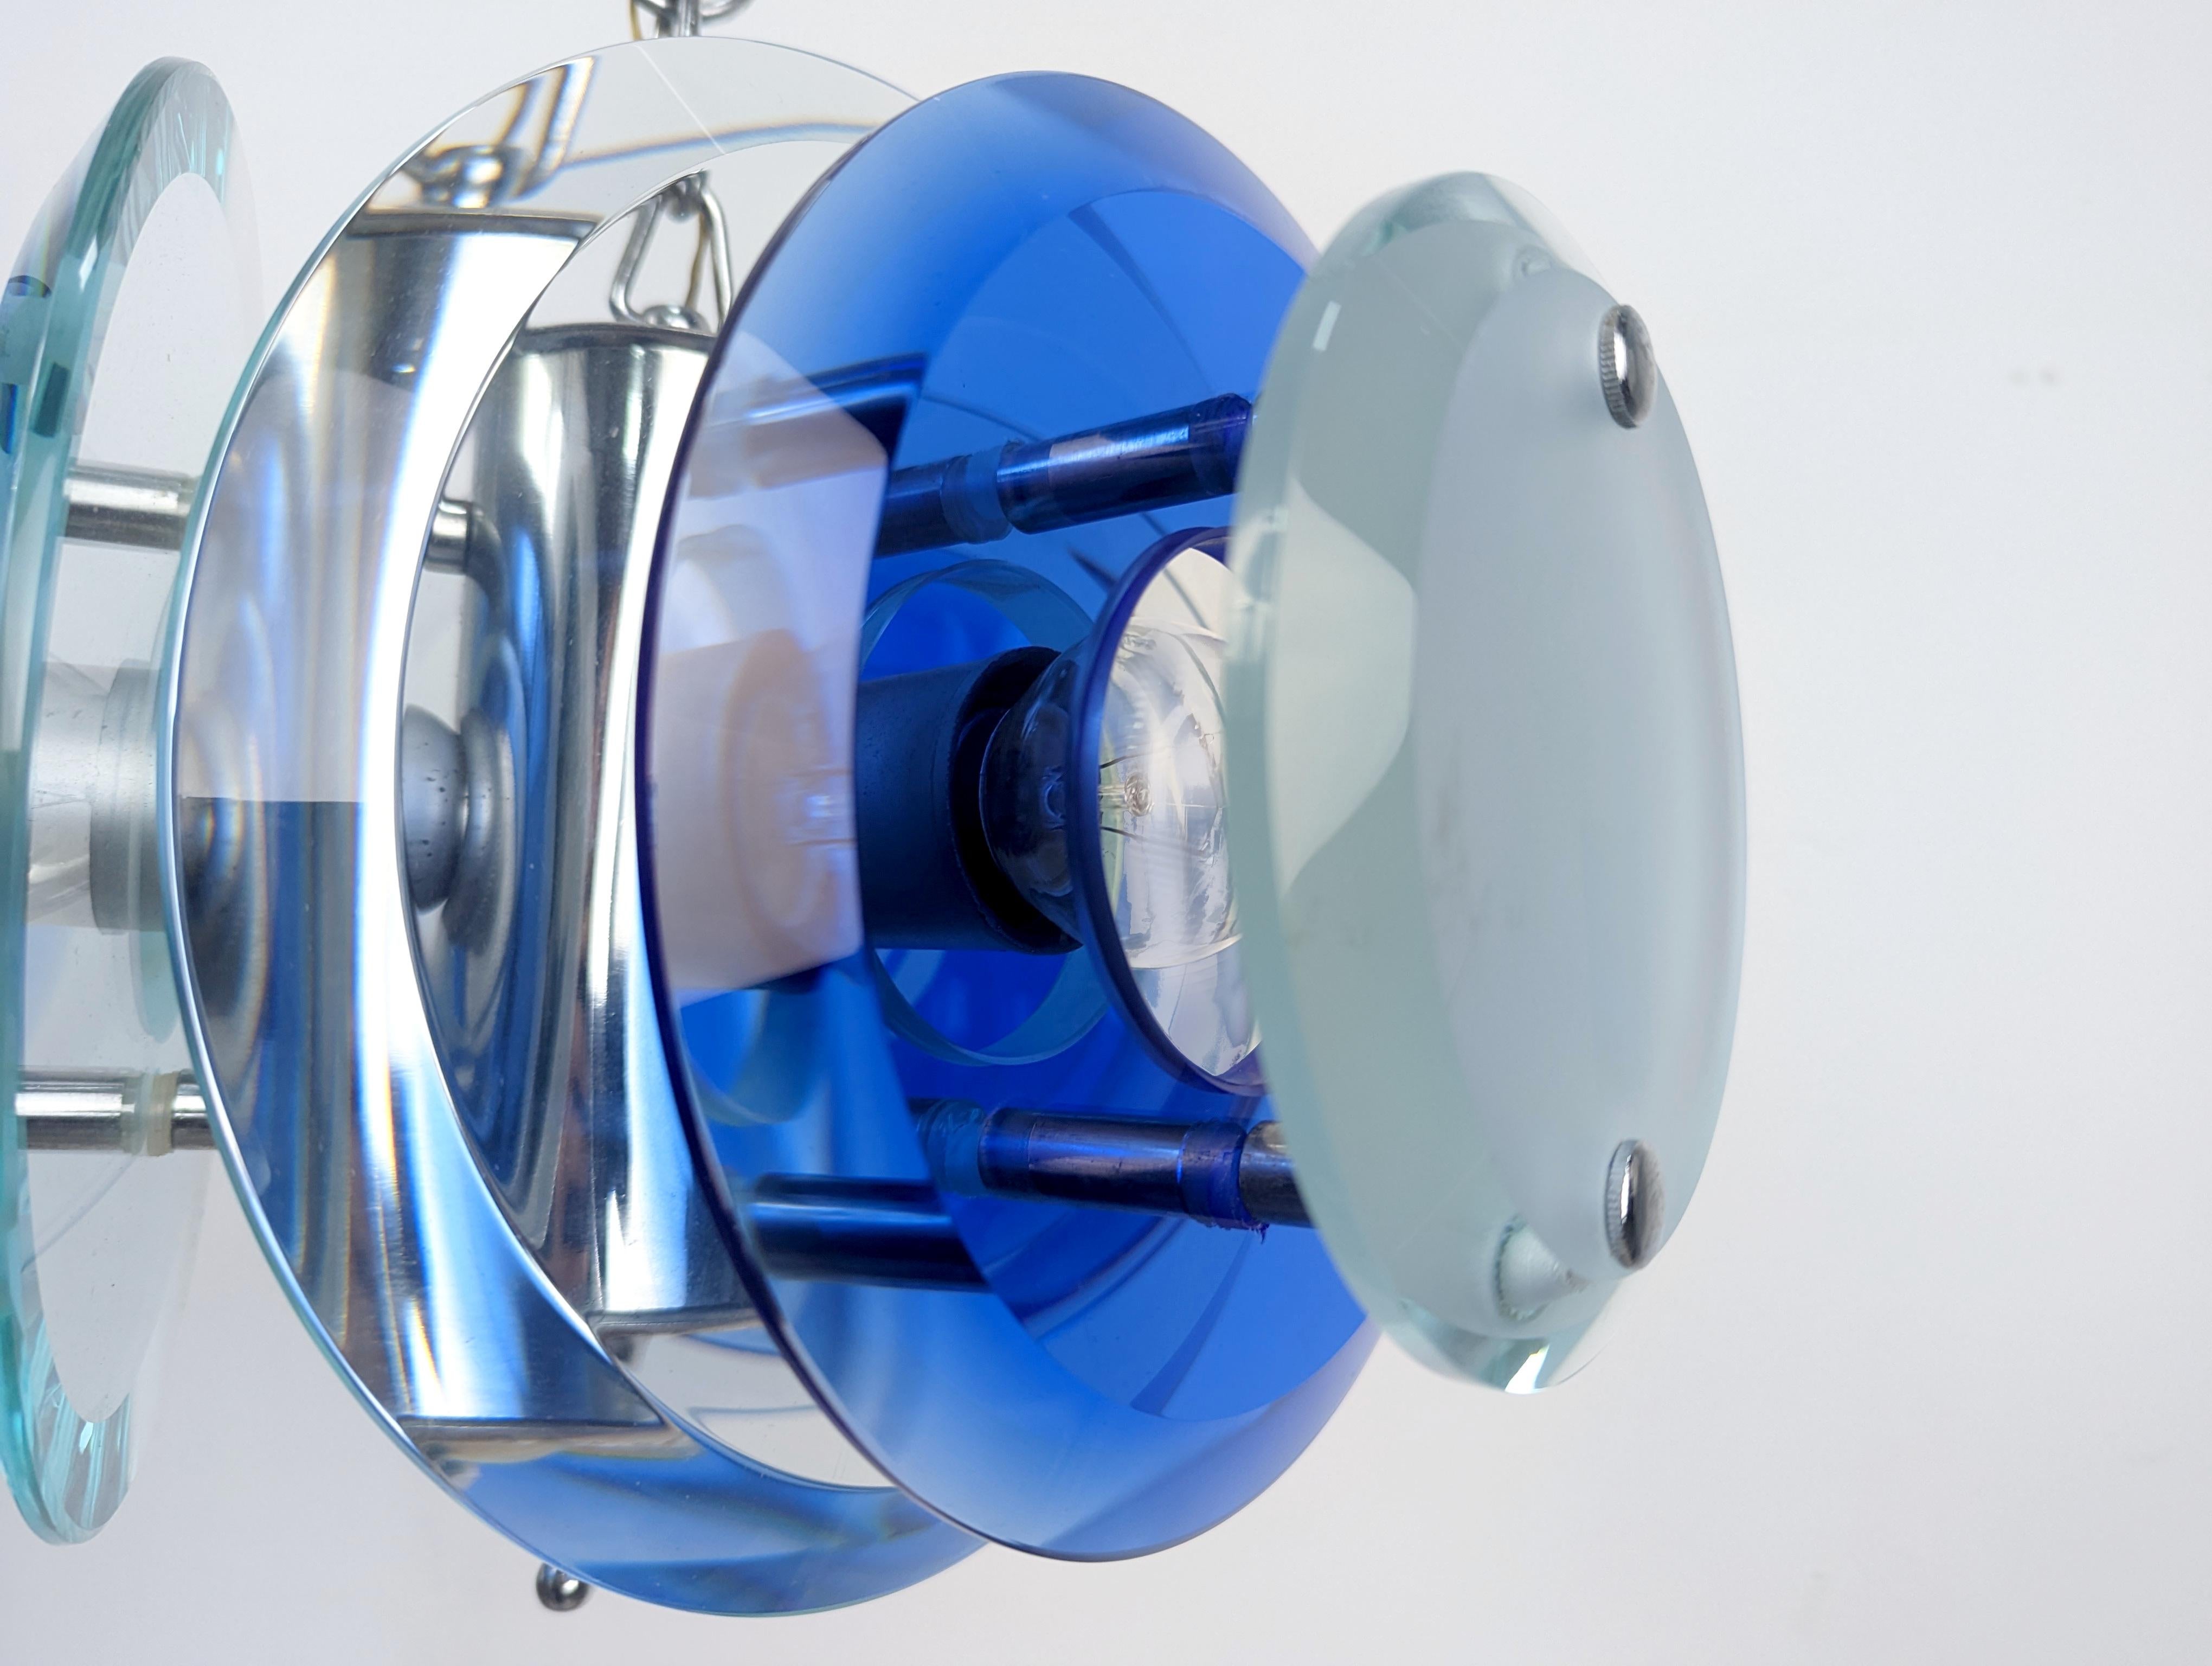 Précieuse lampe aux cristaux épais bleus et clairs produite par l'importante firme italienne Veca et qui, selon les designs que Max Ingrand a introduits pour Fontana Arte, nous offre une belle lampe qui joue avec la lumière et les tons bleus pour